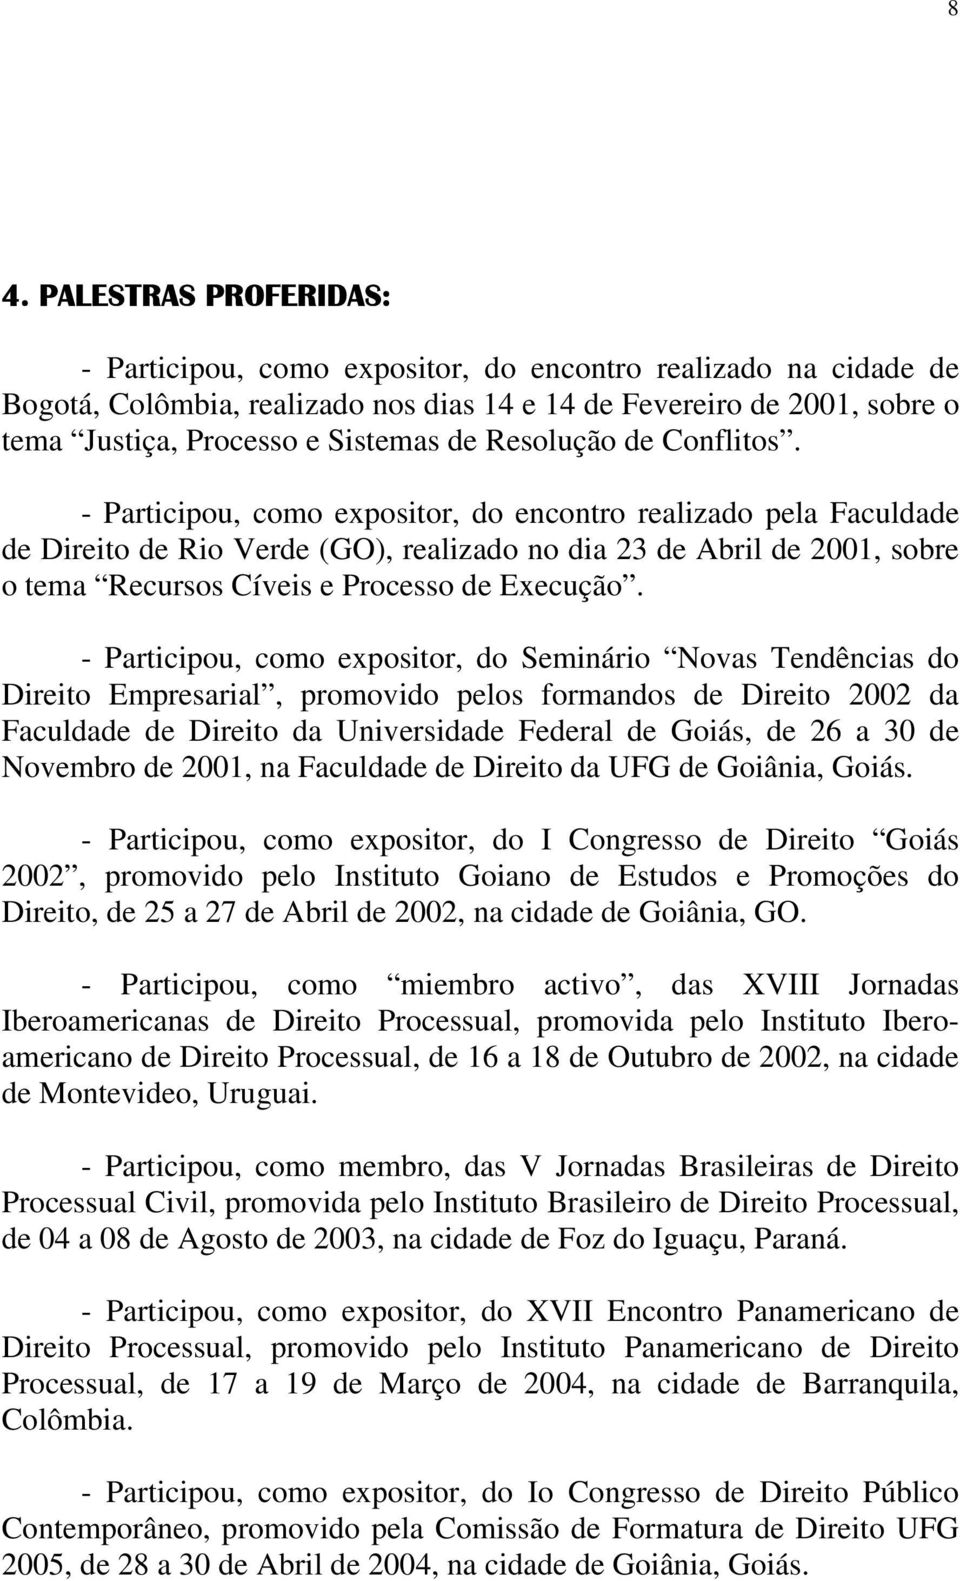 - Participou, como expositor, do encontro realizado pela Faculdade de Direito de Rio Verde (GO), realizado no dia 23 de Abril de 2001, sobre o tema Recursos Cíveis e Processo de Execução.